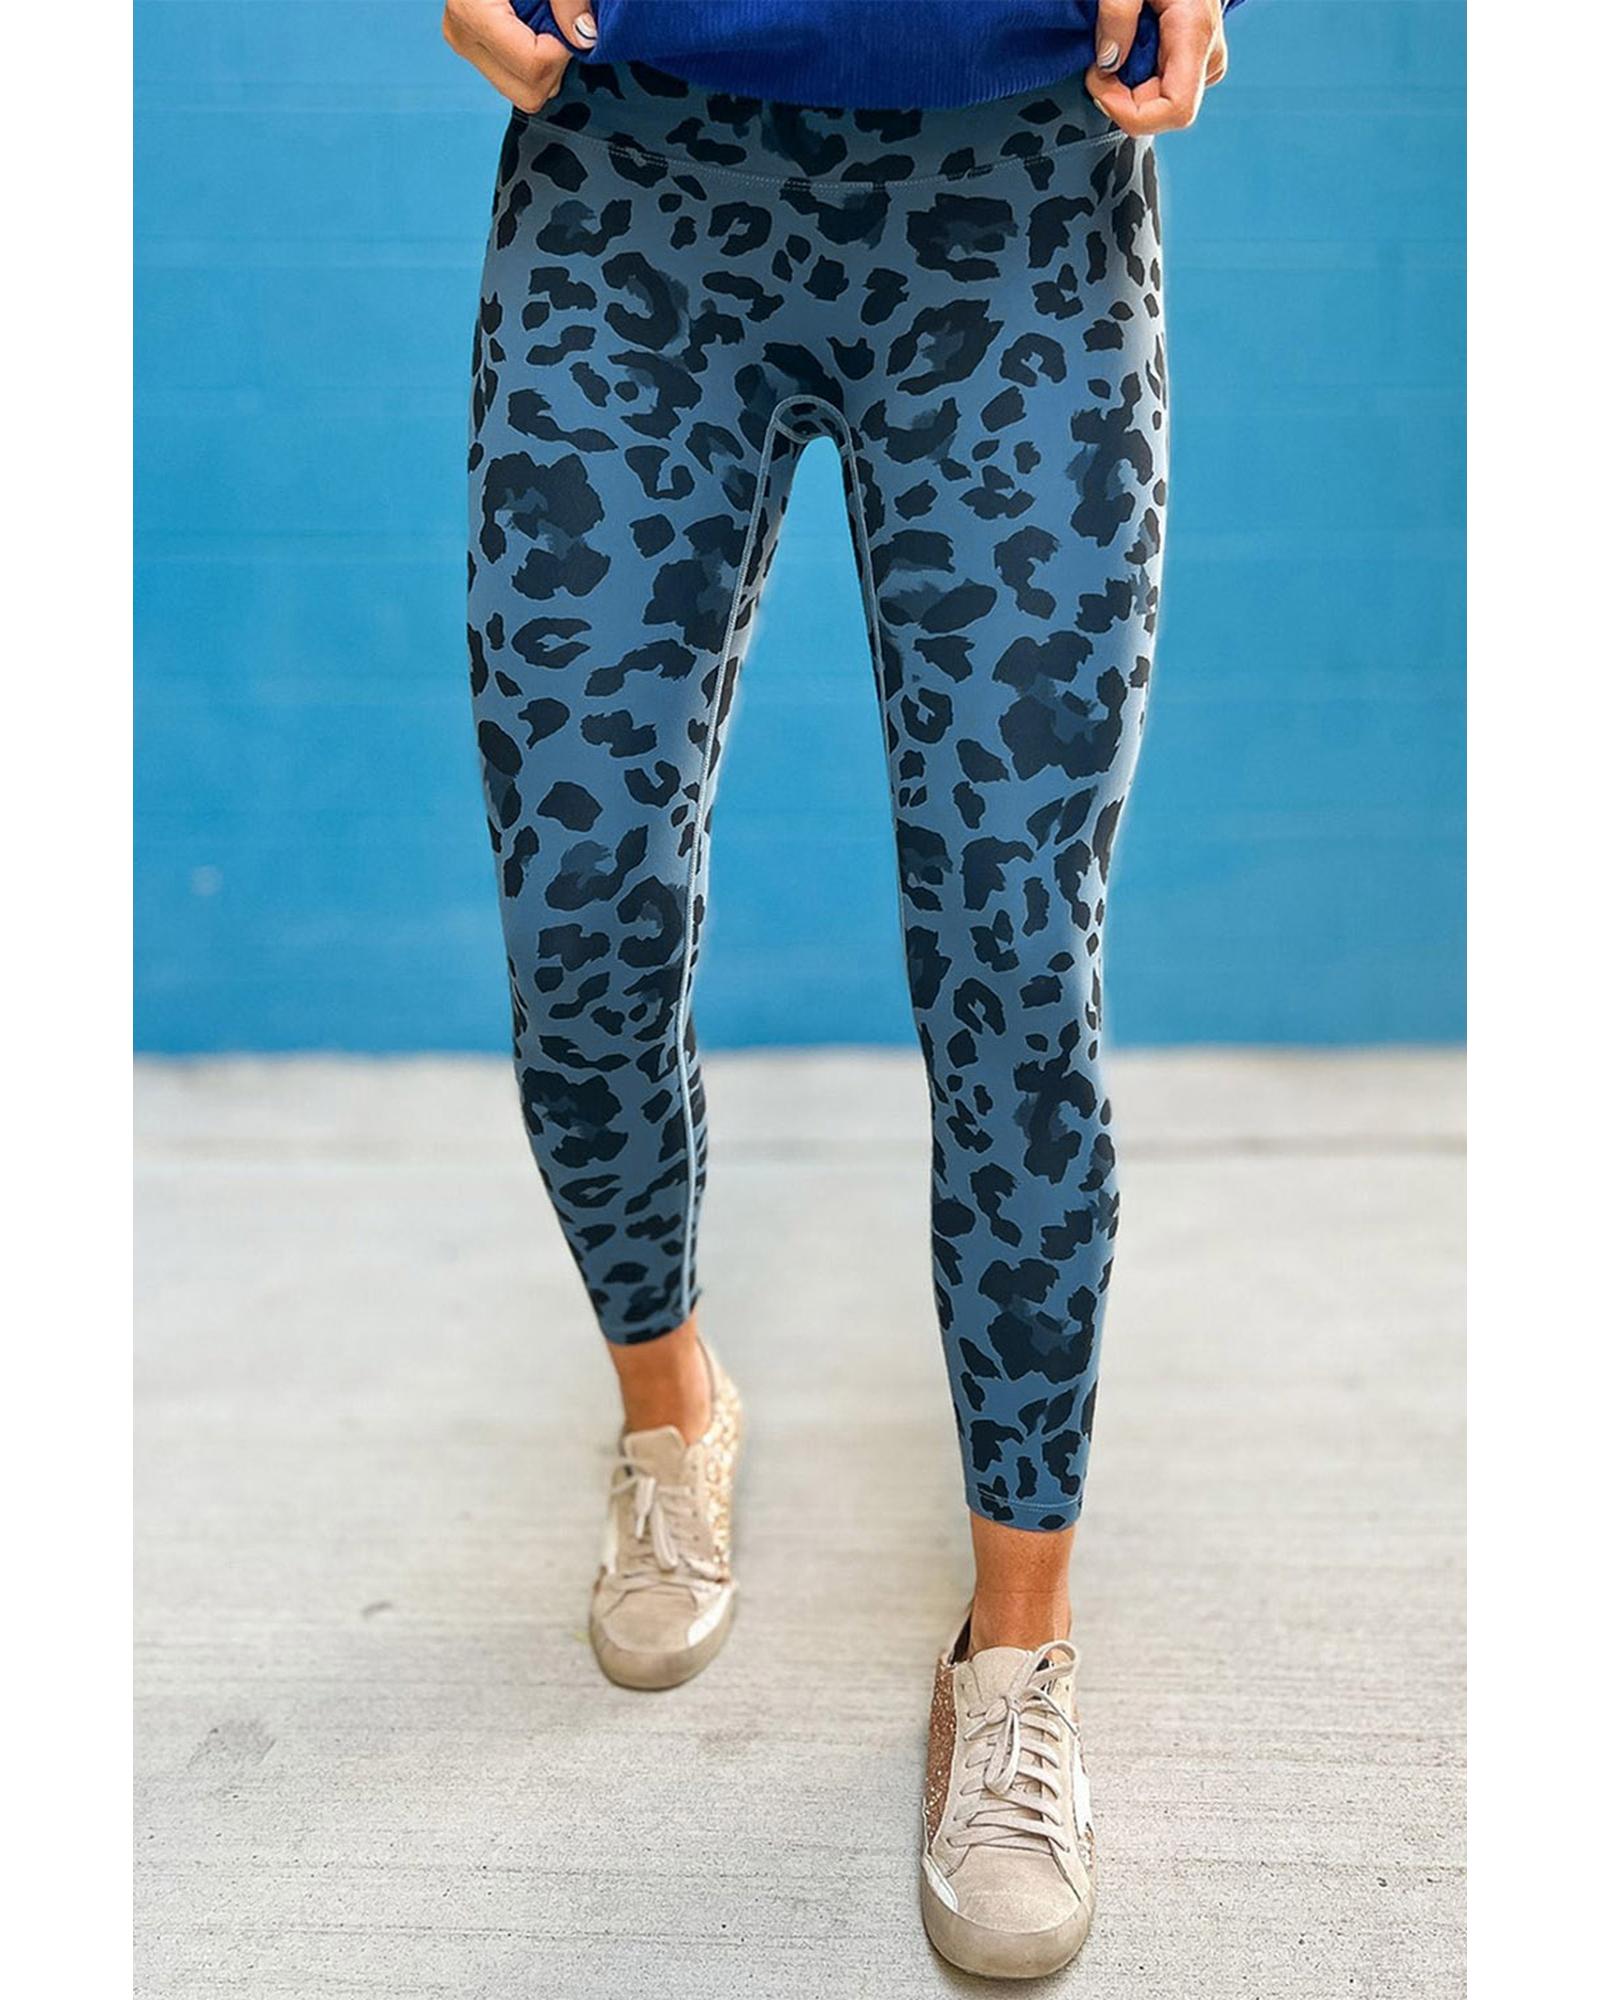 Leopard Print Active Leggings - XL